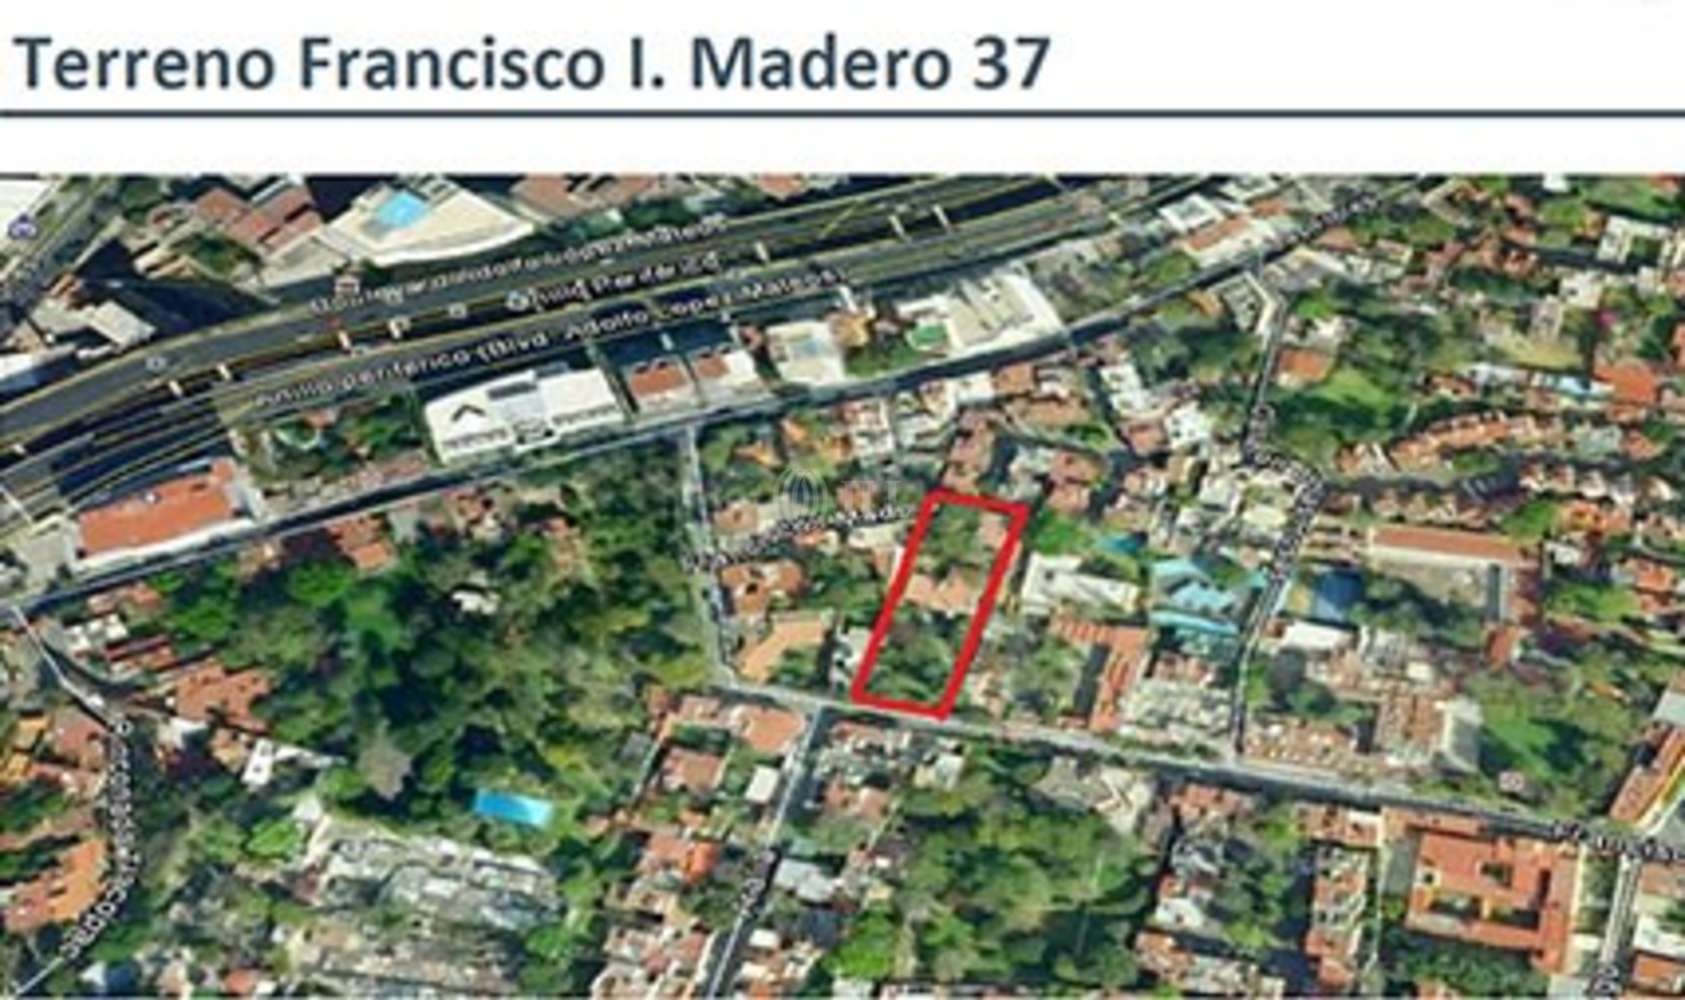 Terreno Ciudad de méxico, 01040 - Francisco I. Madero 37